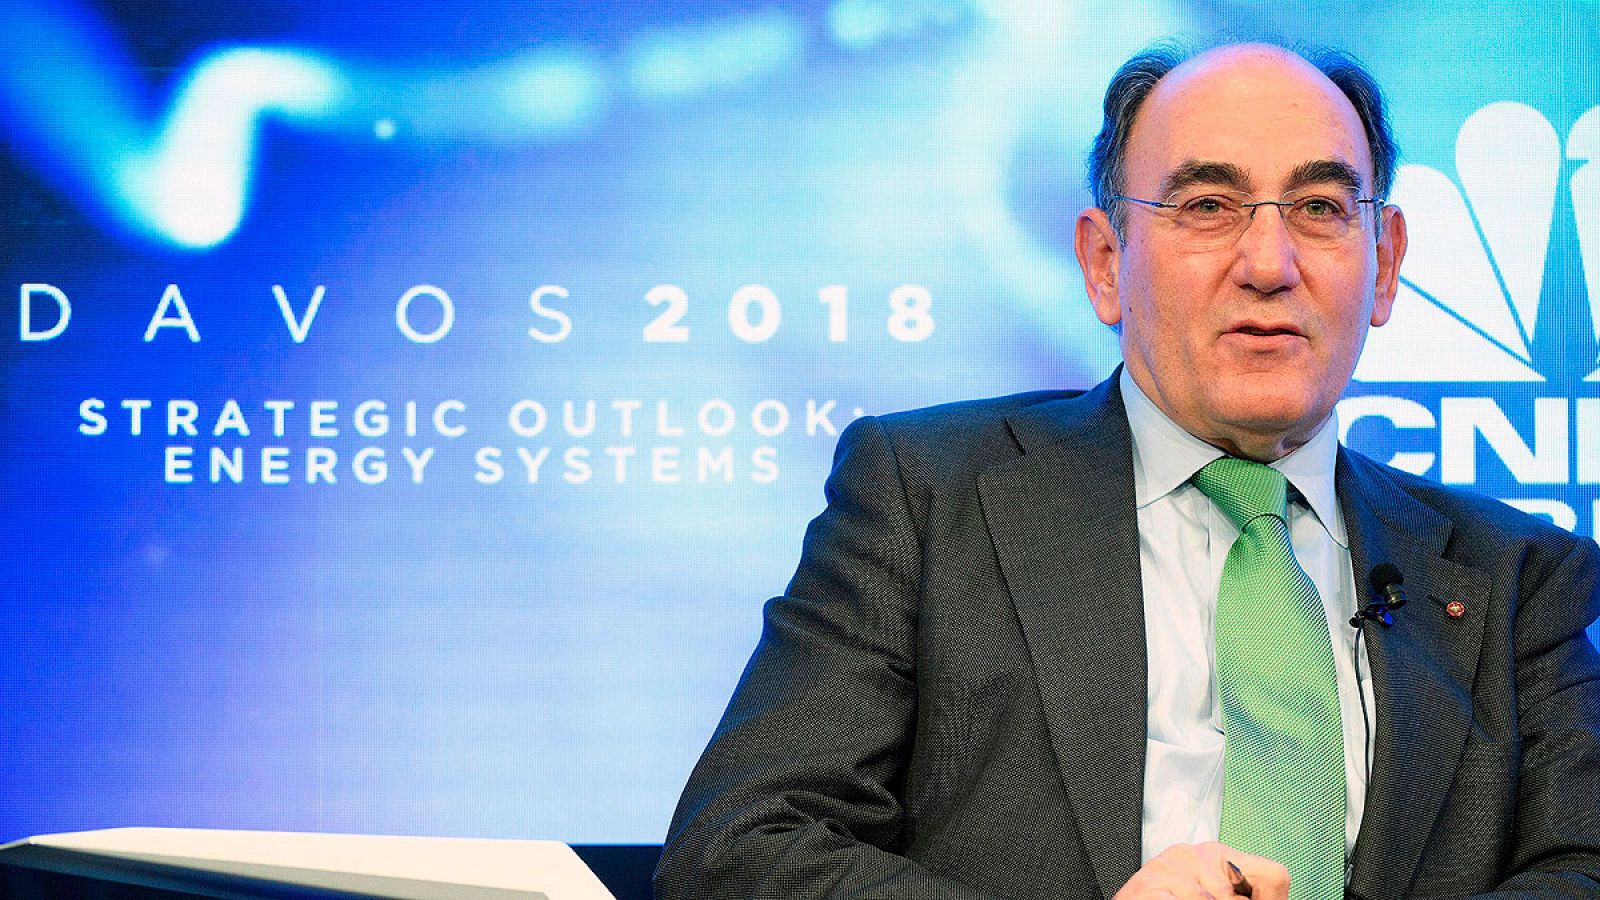 El presidente de Iberdrola, Ignacio Sánchez Galán, durante su intervención en el Foro Económico de Davos